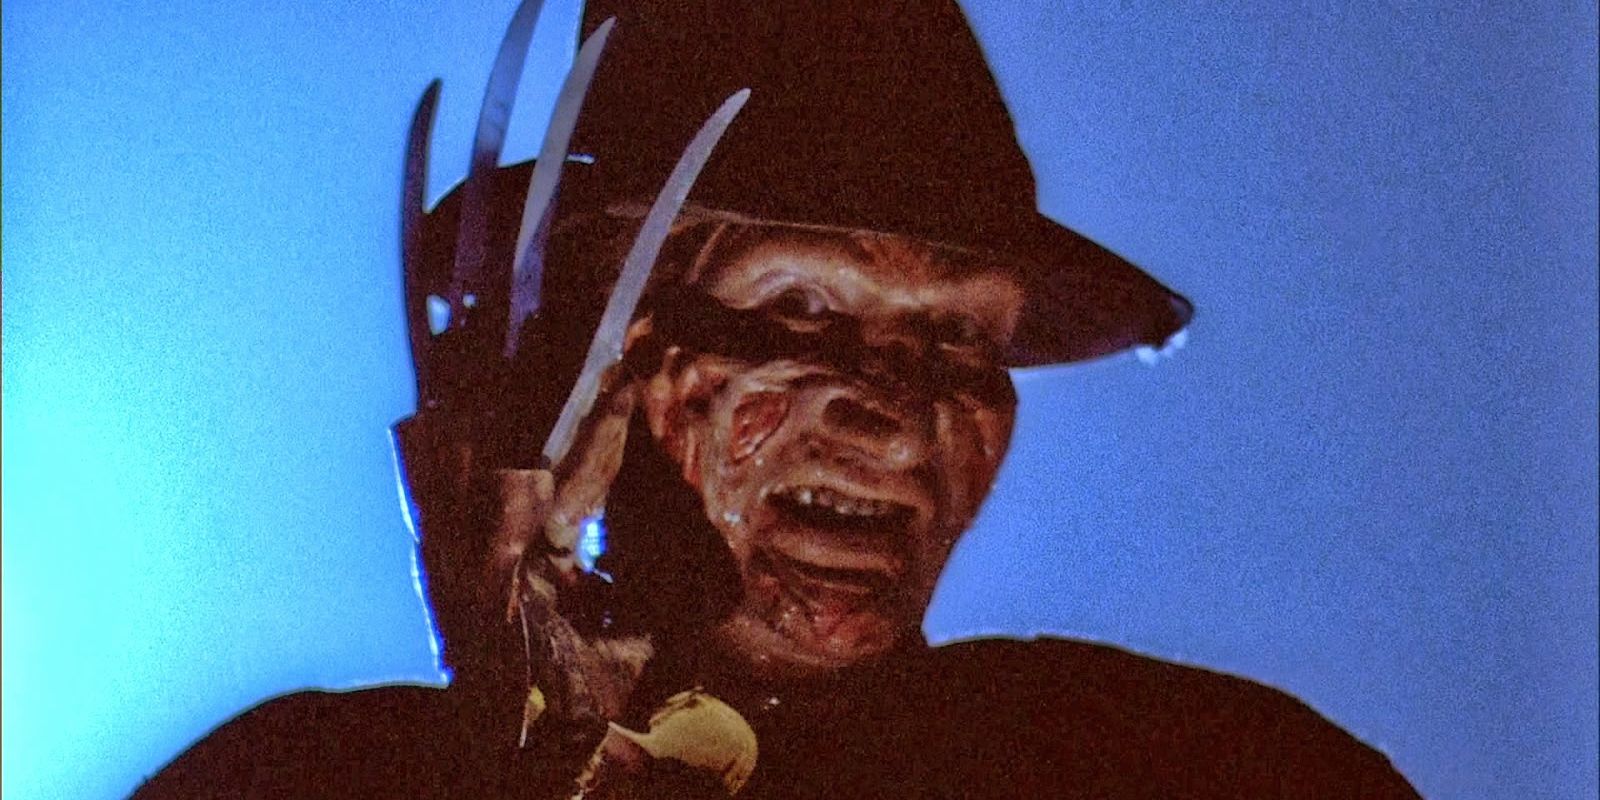 Freddy Krueger in the alleyway from Nightmare on Elm Street